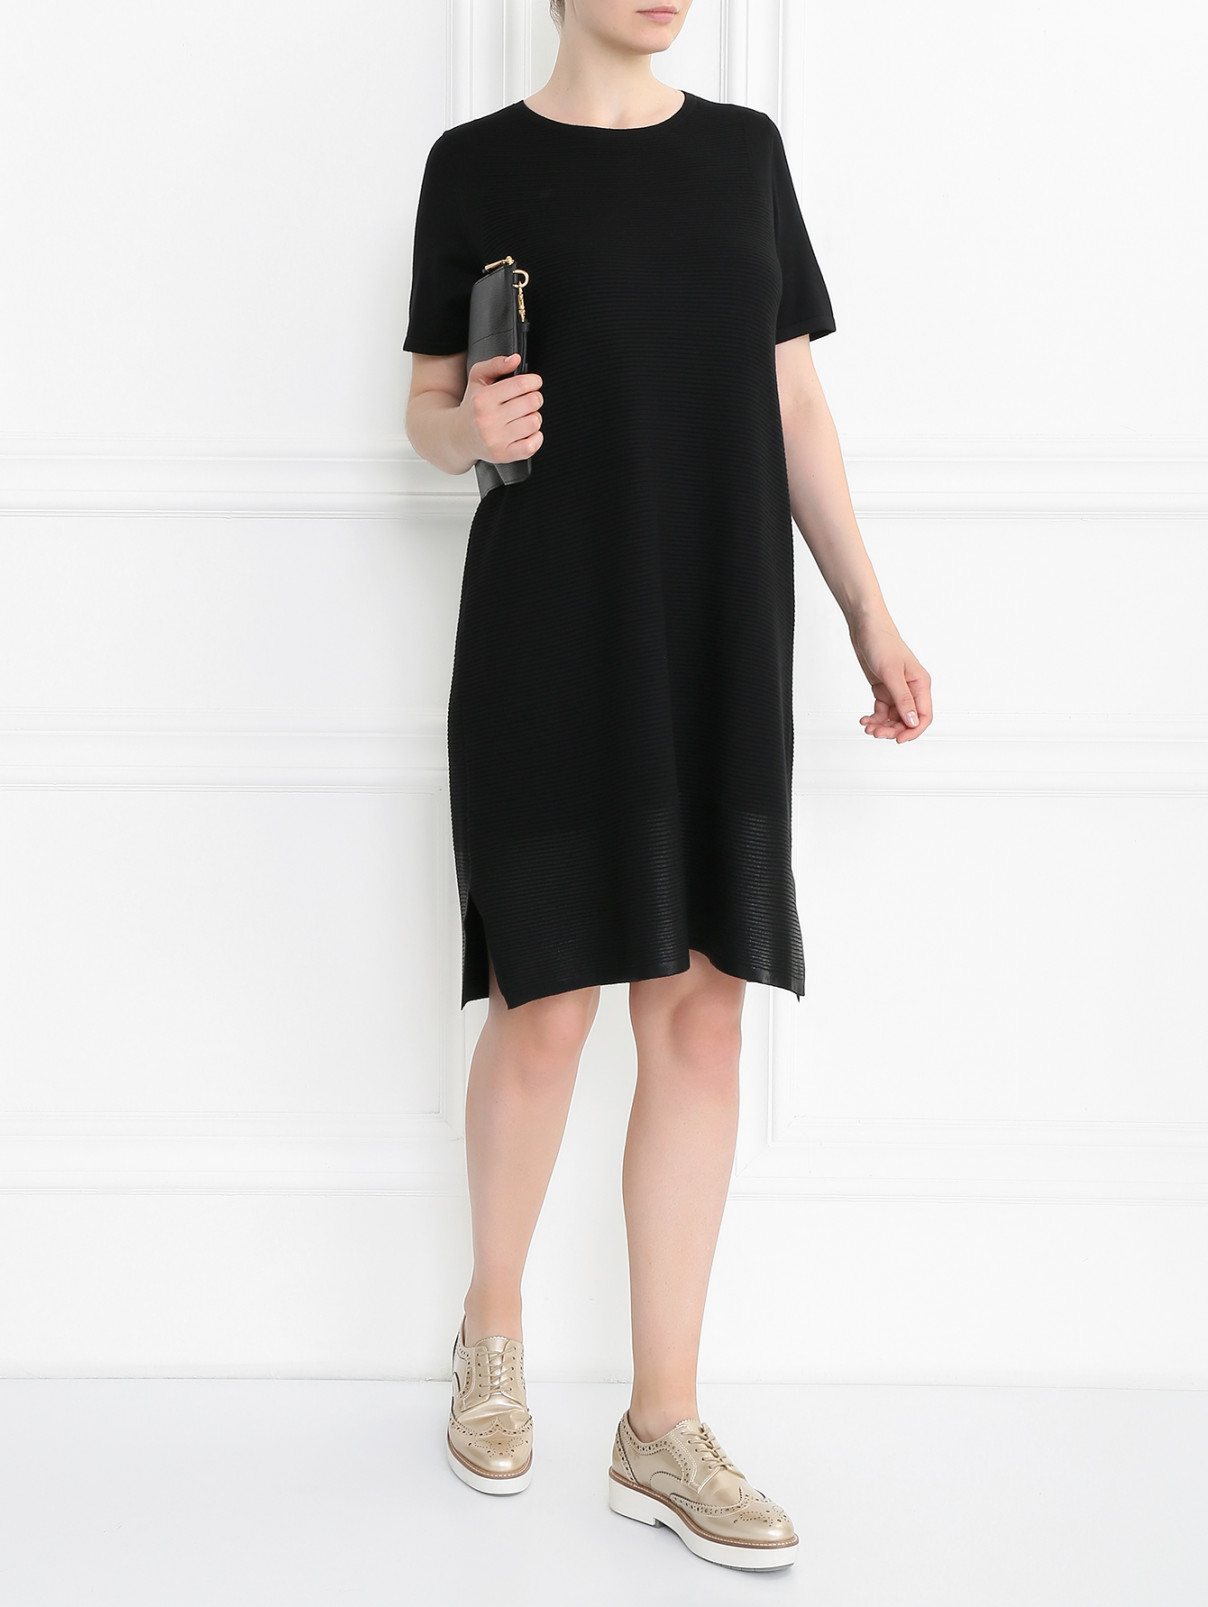 Трикотажное платье с коротким рукавом Marina Sport  –  Модель Общий вид  – Цвет:  Черный